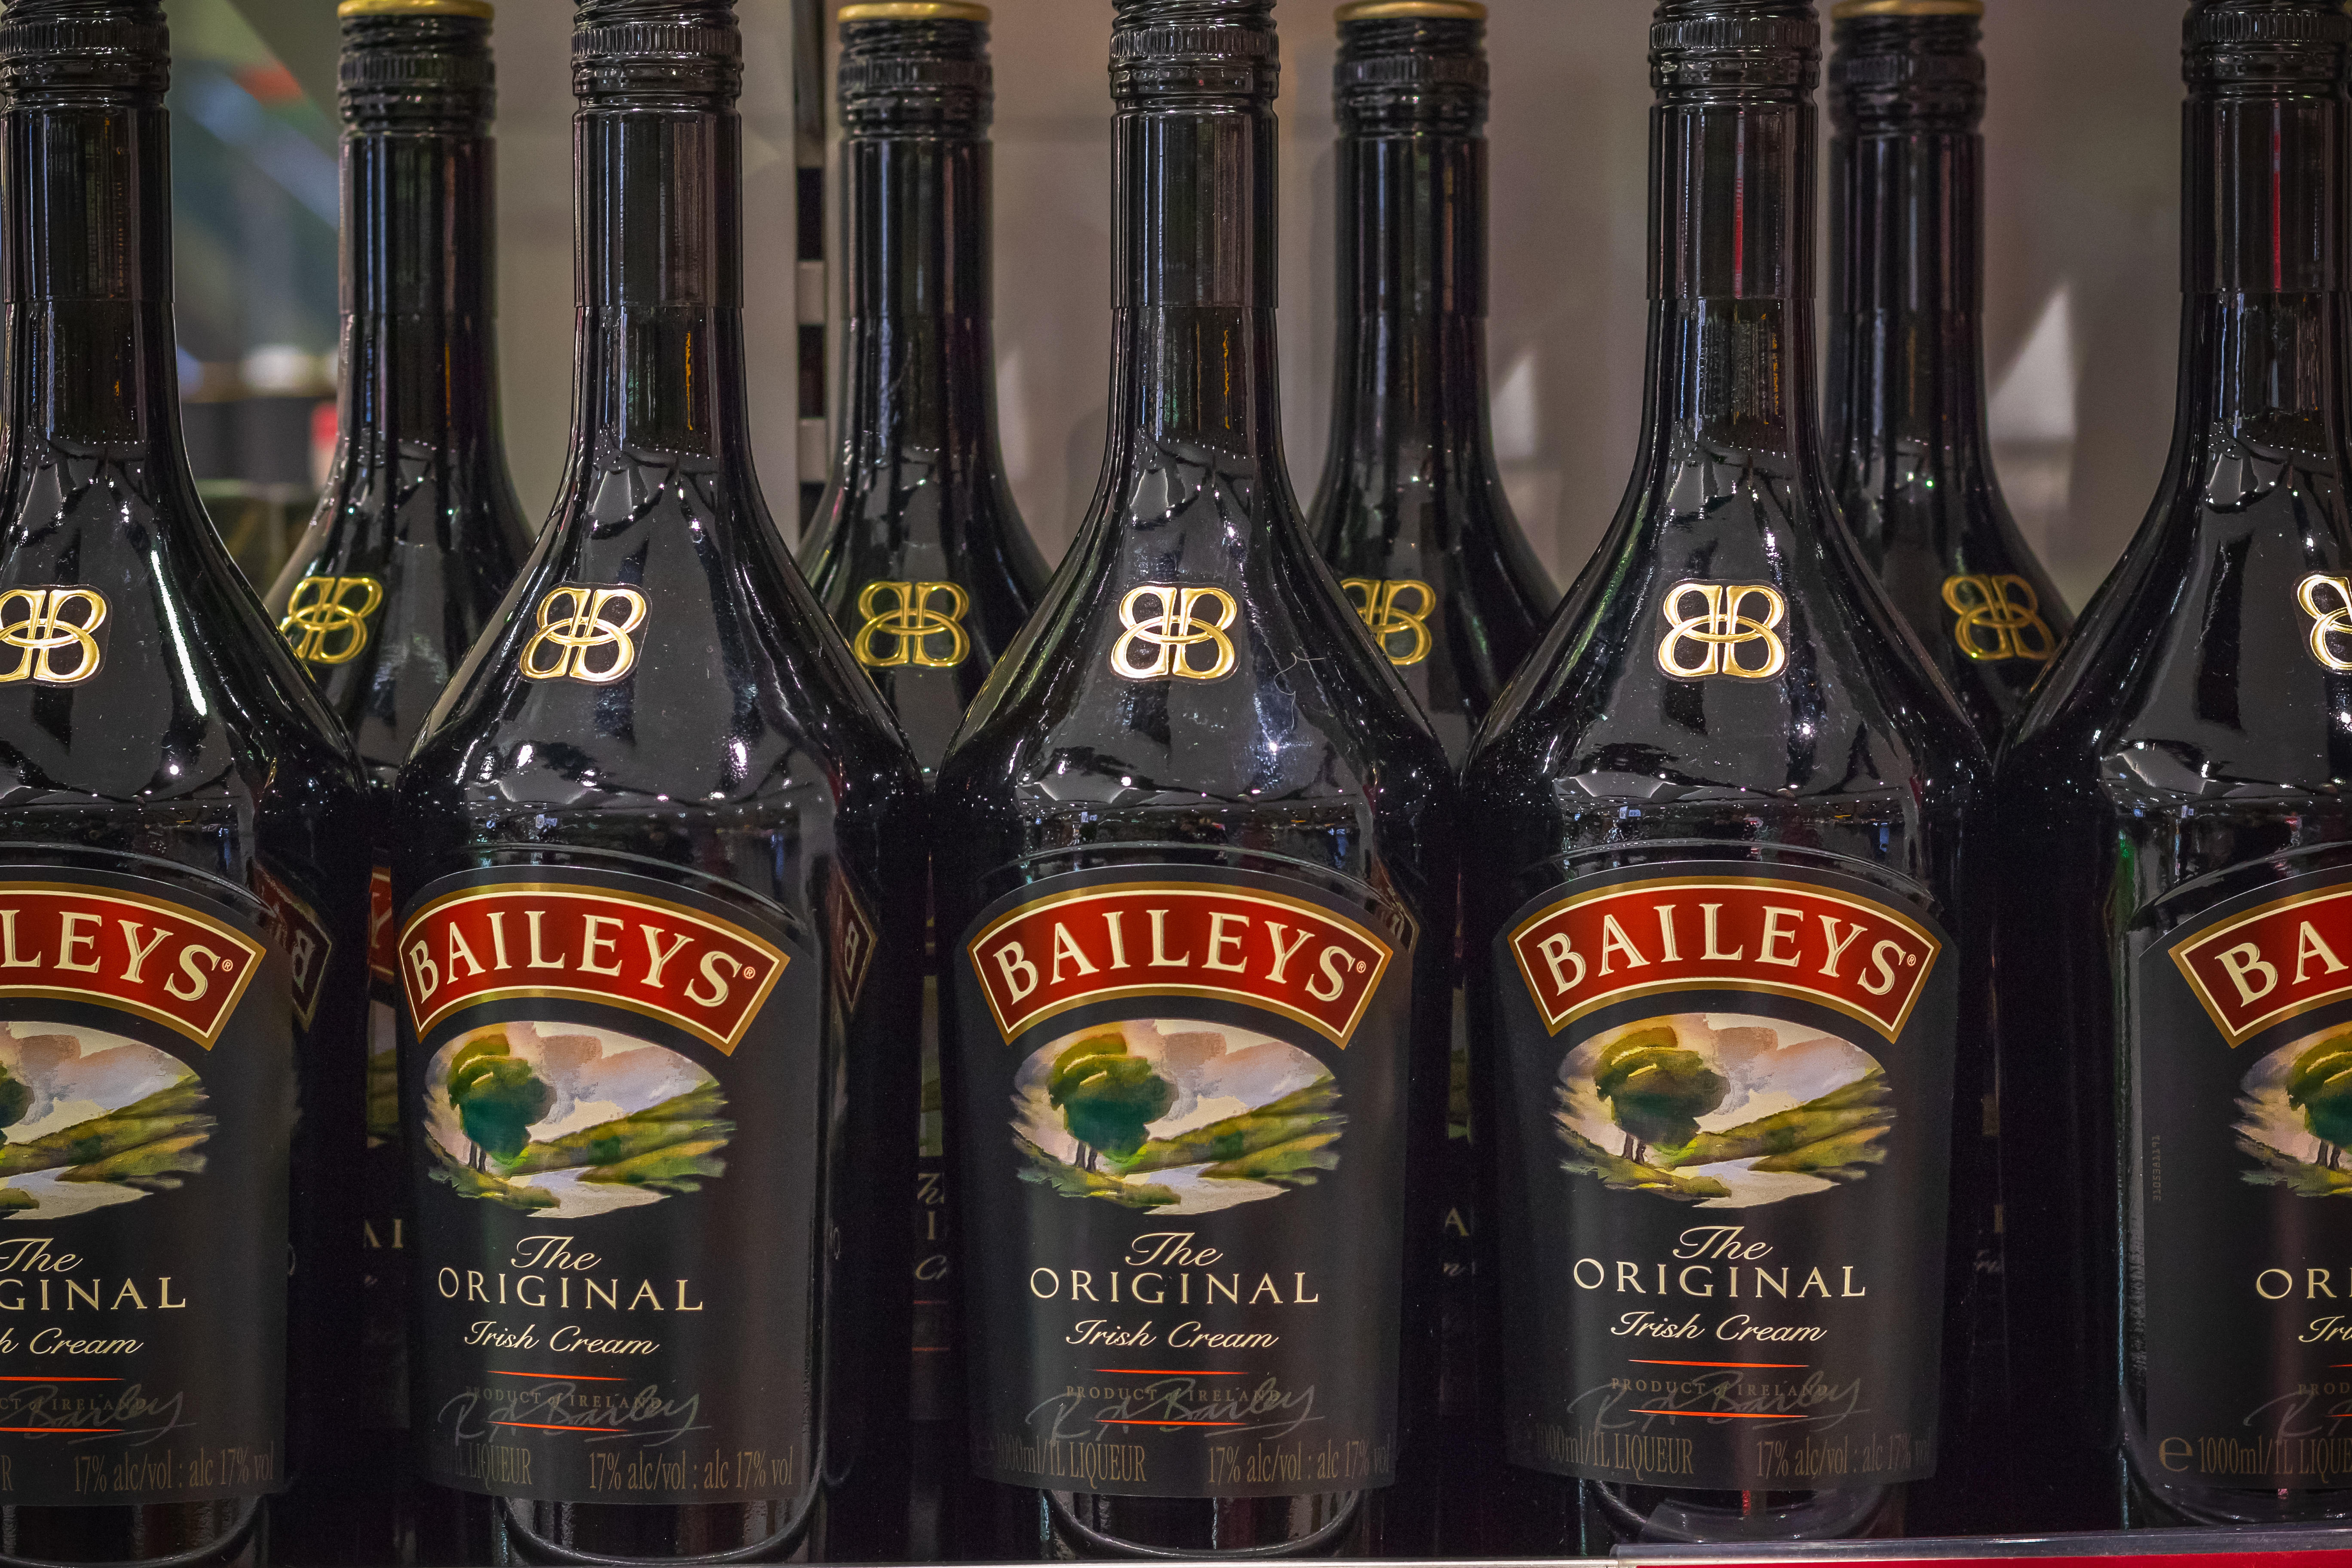 Der Original Baileys Irish Cream Likör erfreut sich zu Weihnachten großer Beliebtheit